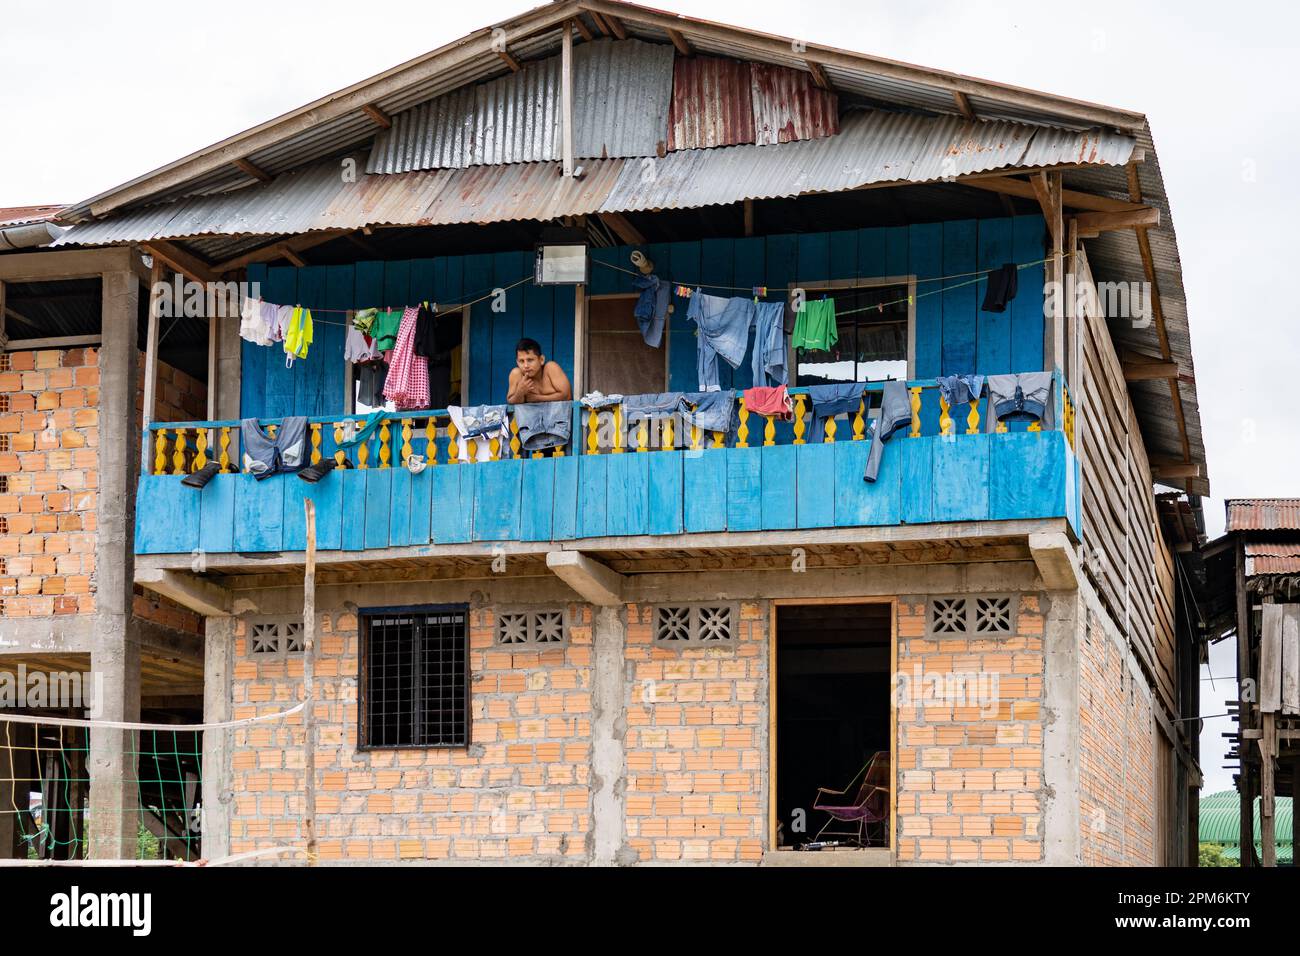 Belen ist eine schwimmende Stadt extremer Armut und mangelnder sanitärer Einrichtungen. Das sind einige der ärmsten Menschen in Peru. Stockfoto